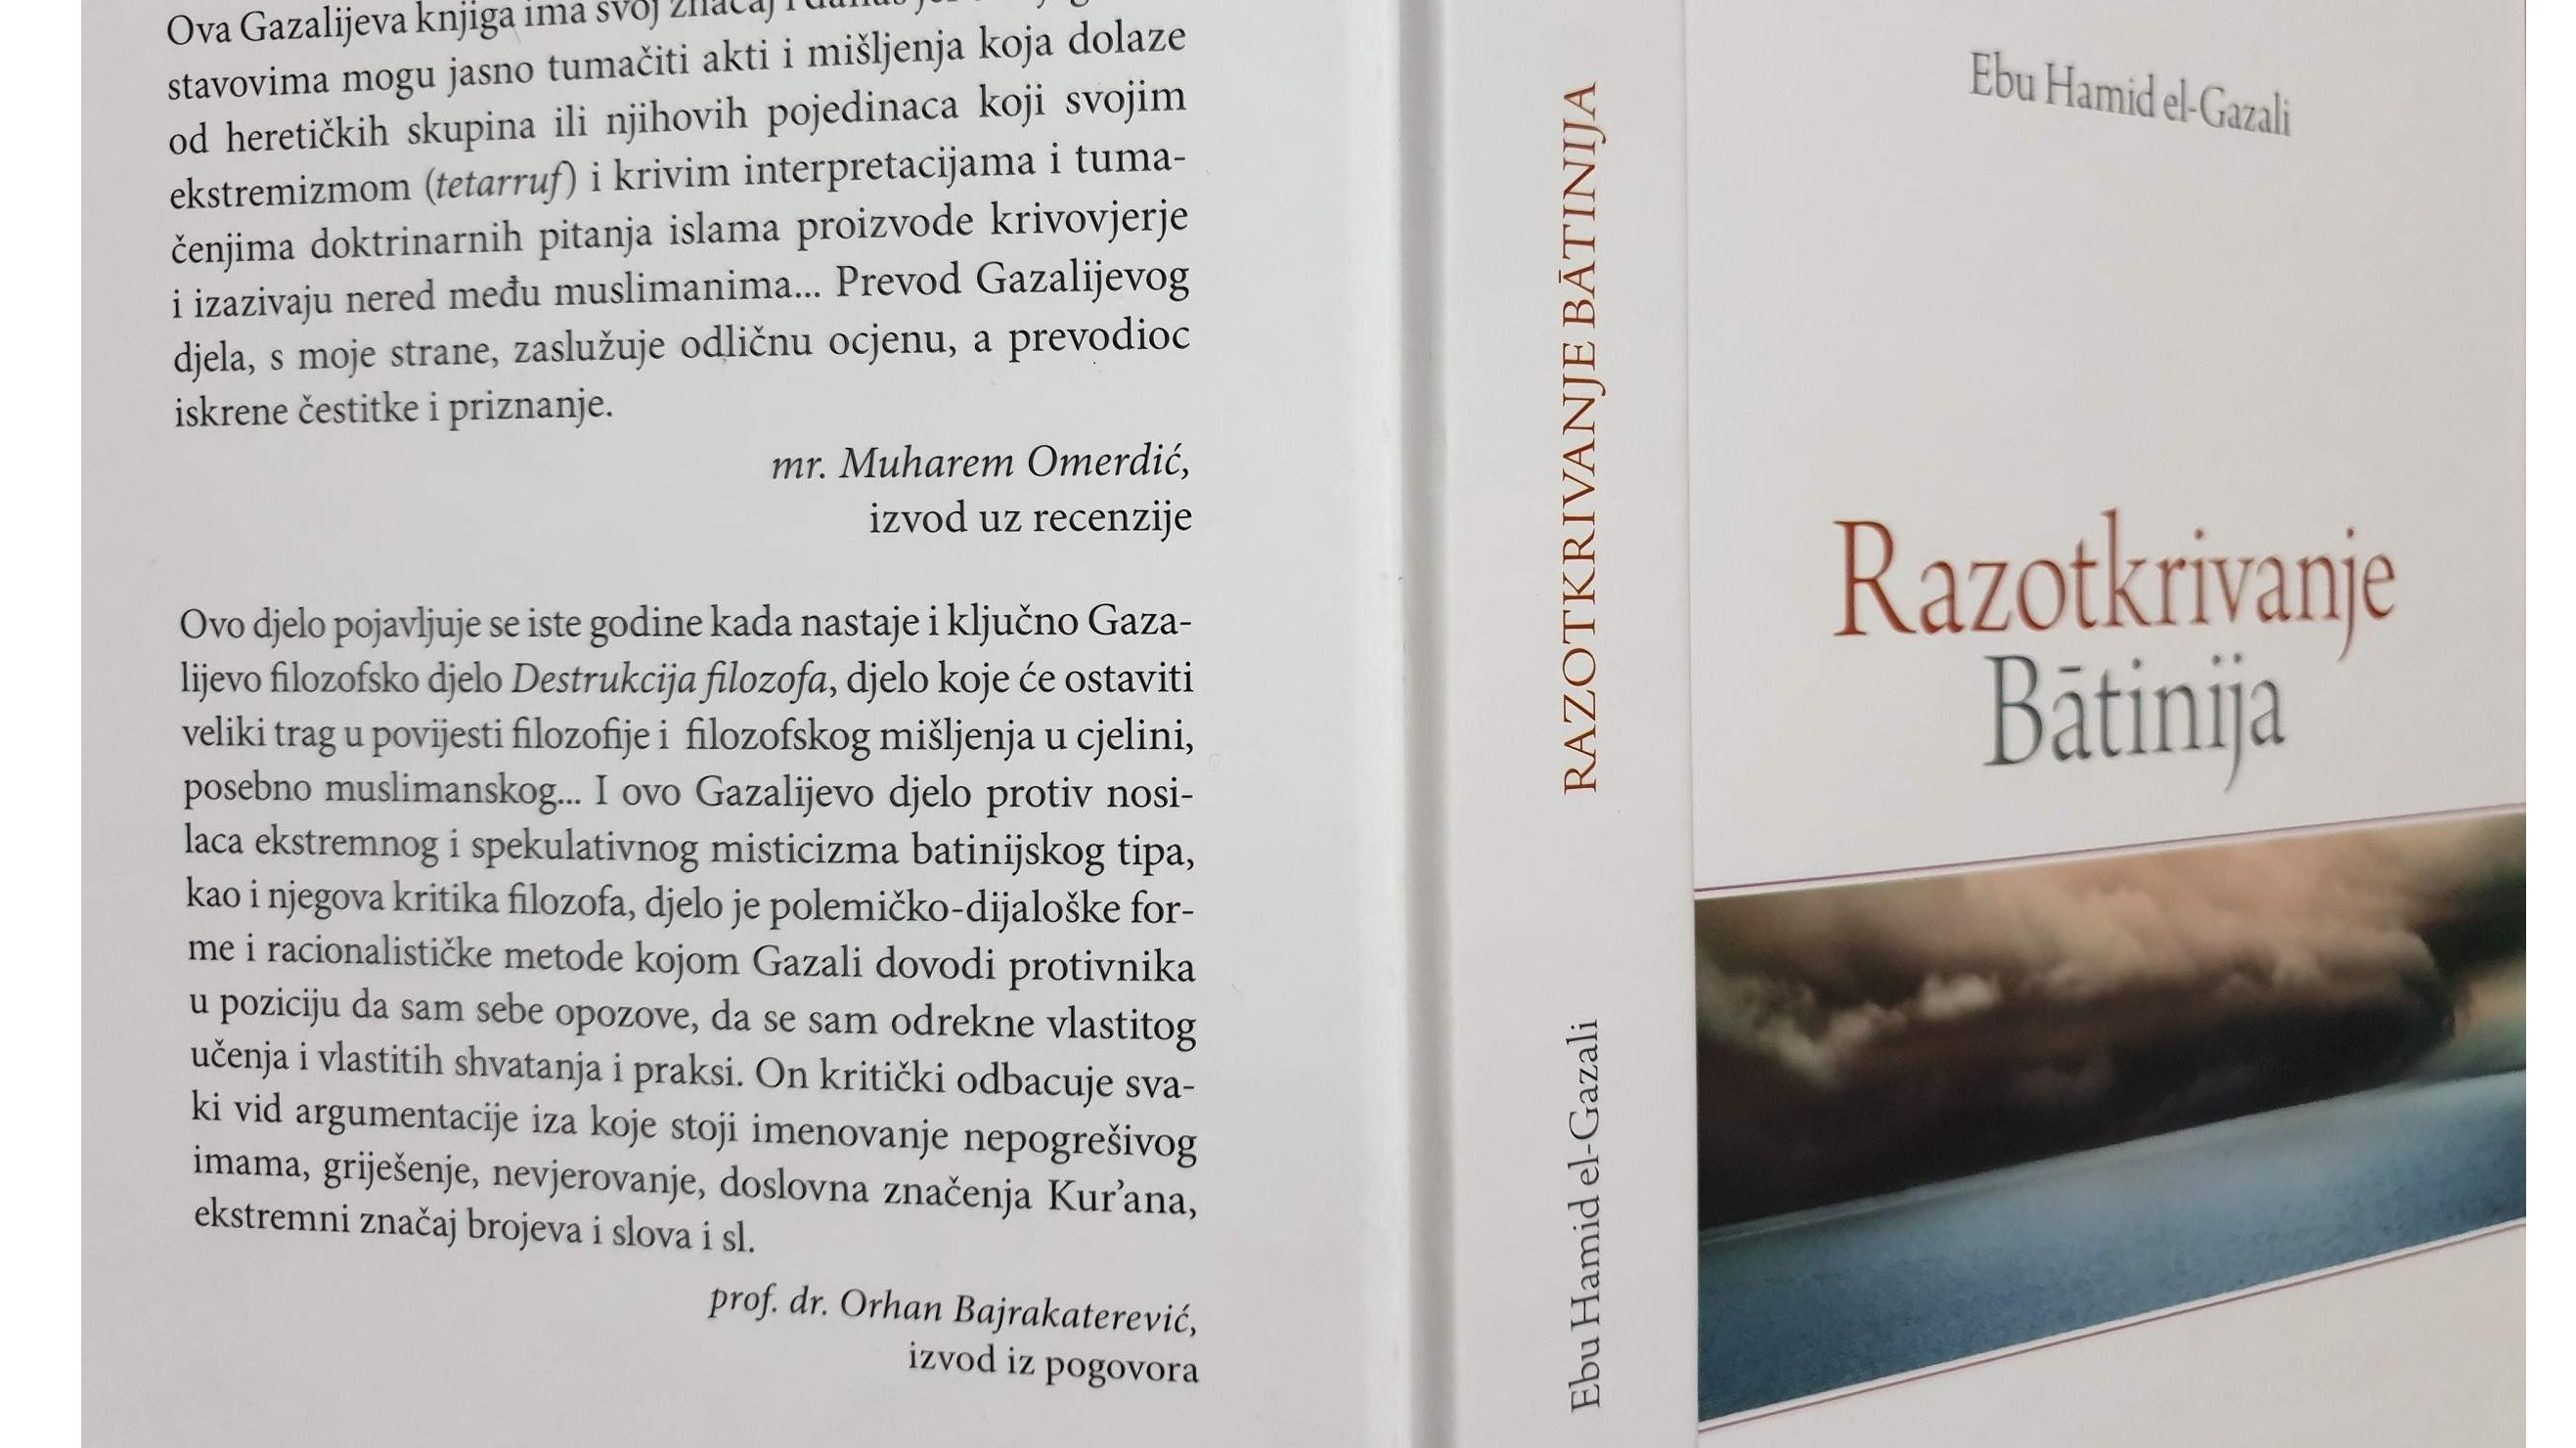 Objavljena knjiga imama Gazalija "Razotkrivanje batinija"